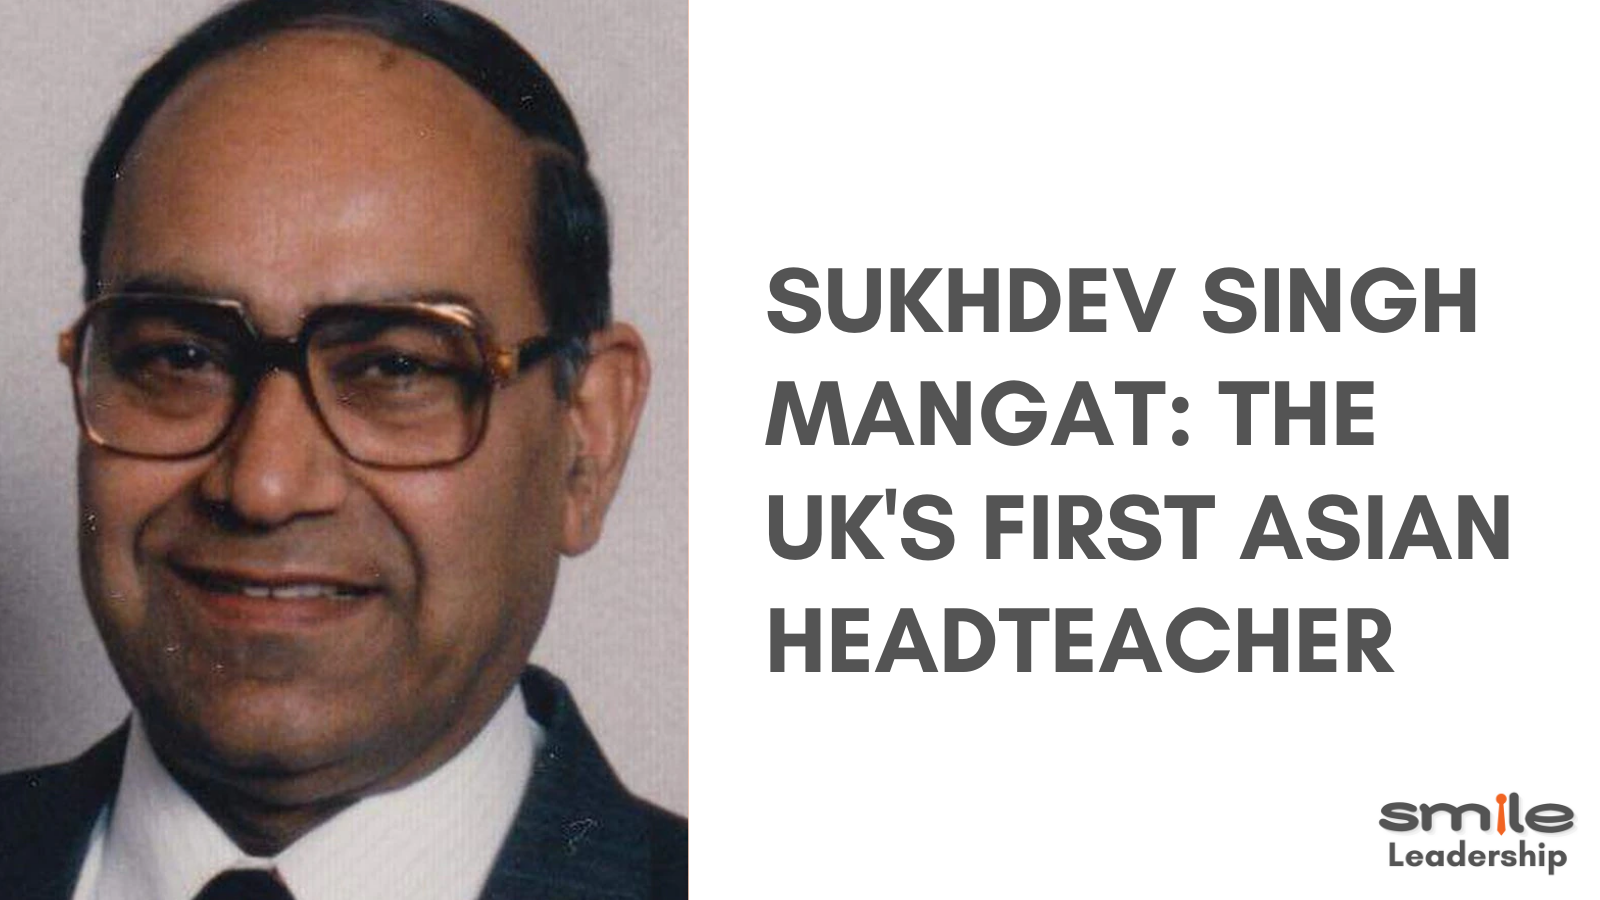 Sukhdev Singh Mangat: The UK's First Asian Headteacher